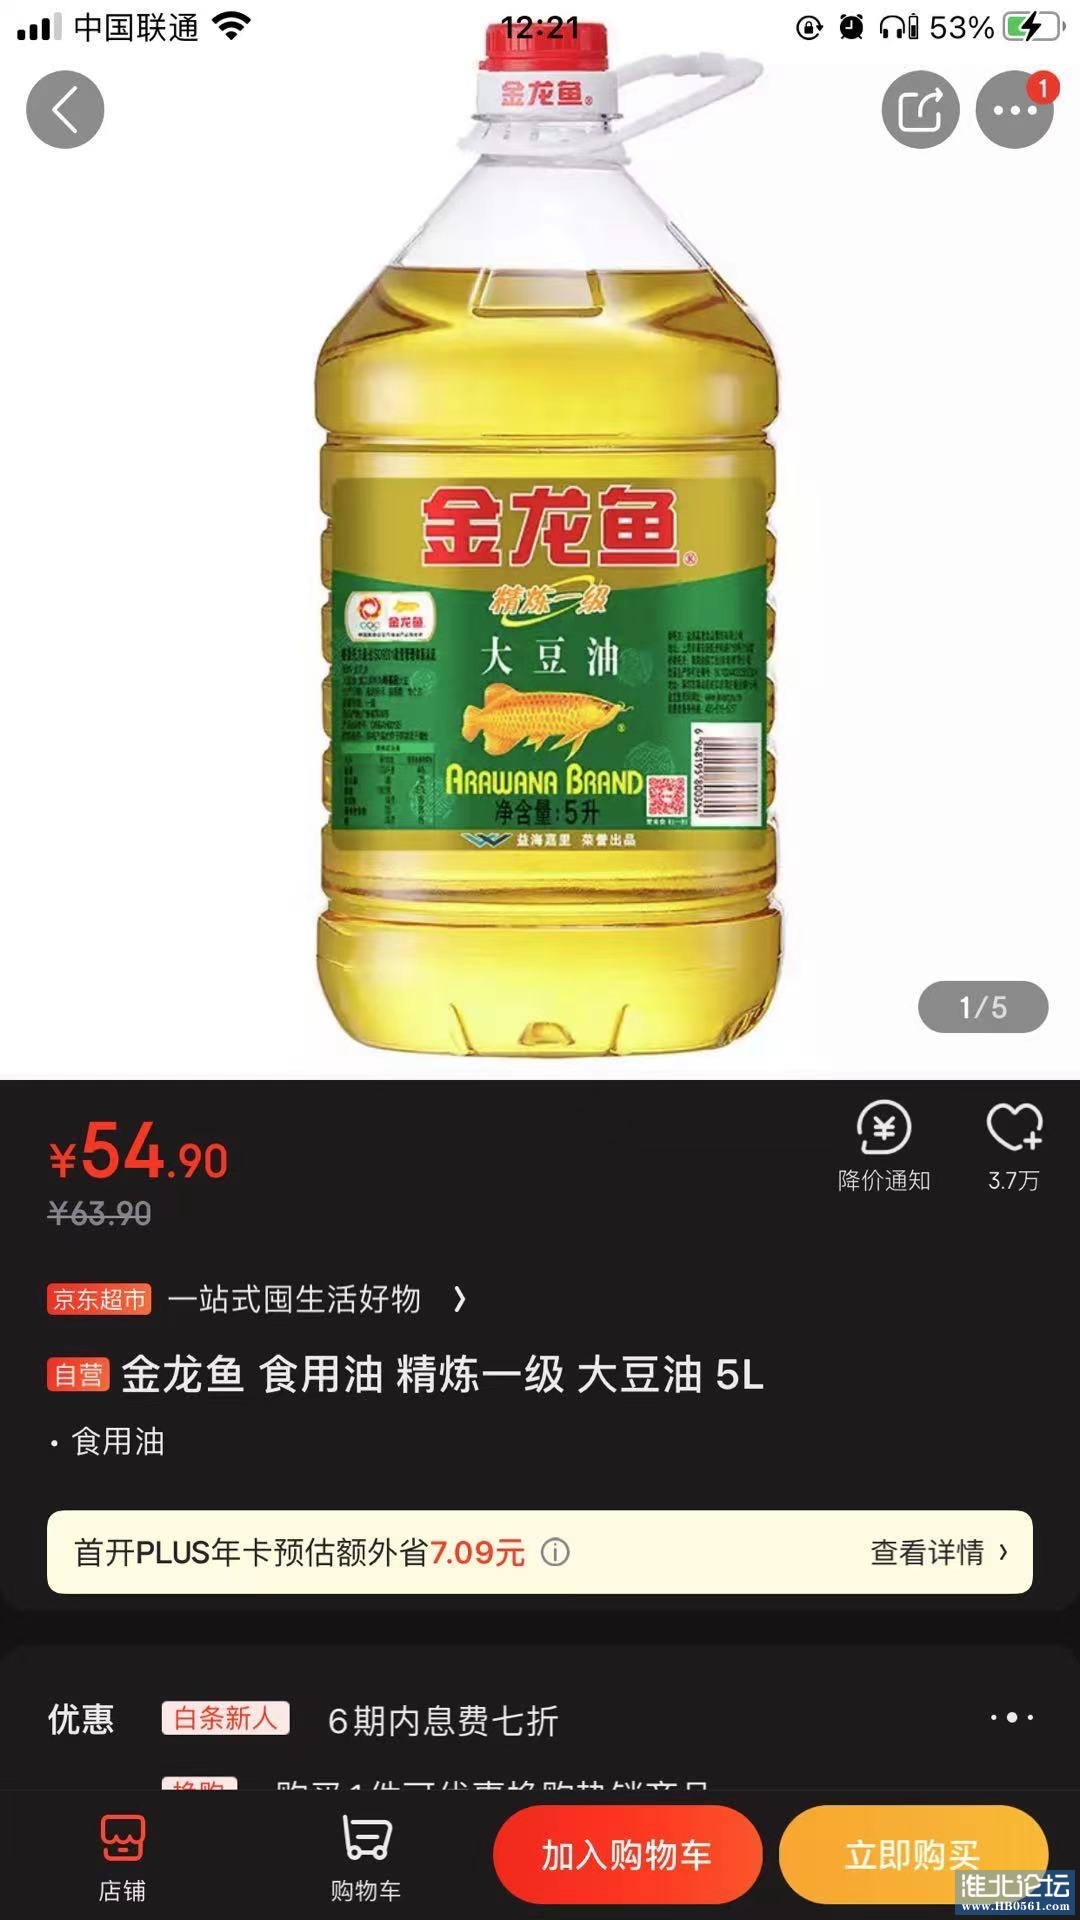 京东货金龙鱼大豆油10斤报价34